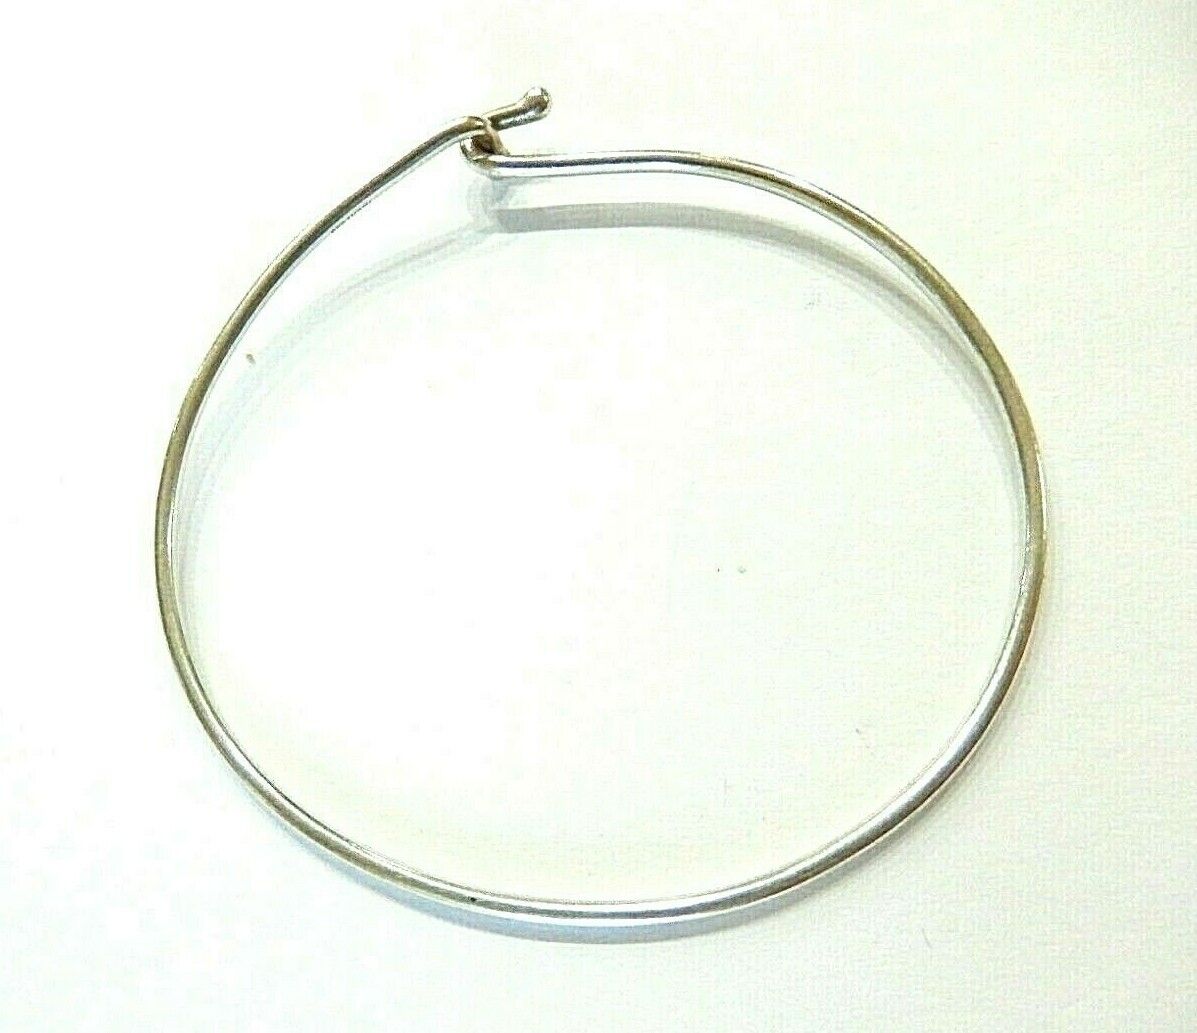 *JAMES AVERY*  Sterling Silver Hook On Wire Bracelet 2 1/4" Diameter